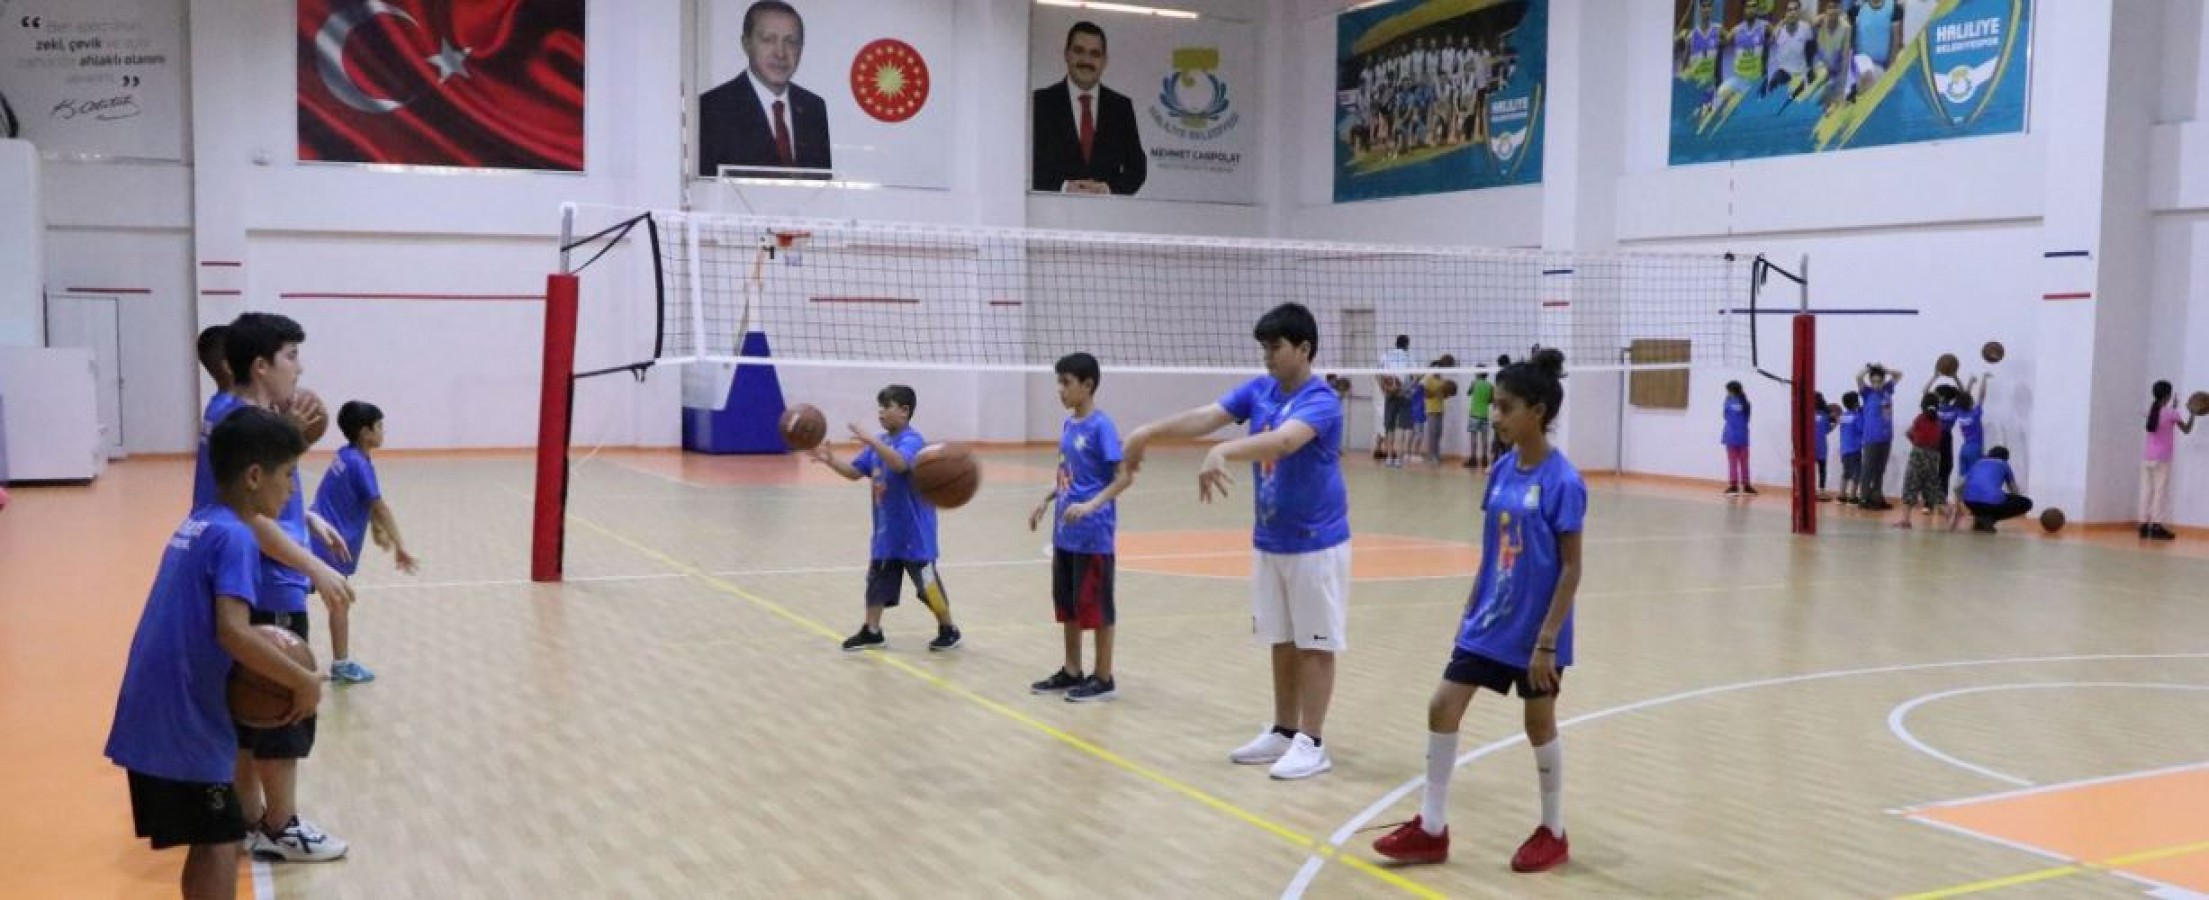 Haliliye'de Çocuklara Spor Alışkanlığı Kazandırılıyor;